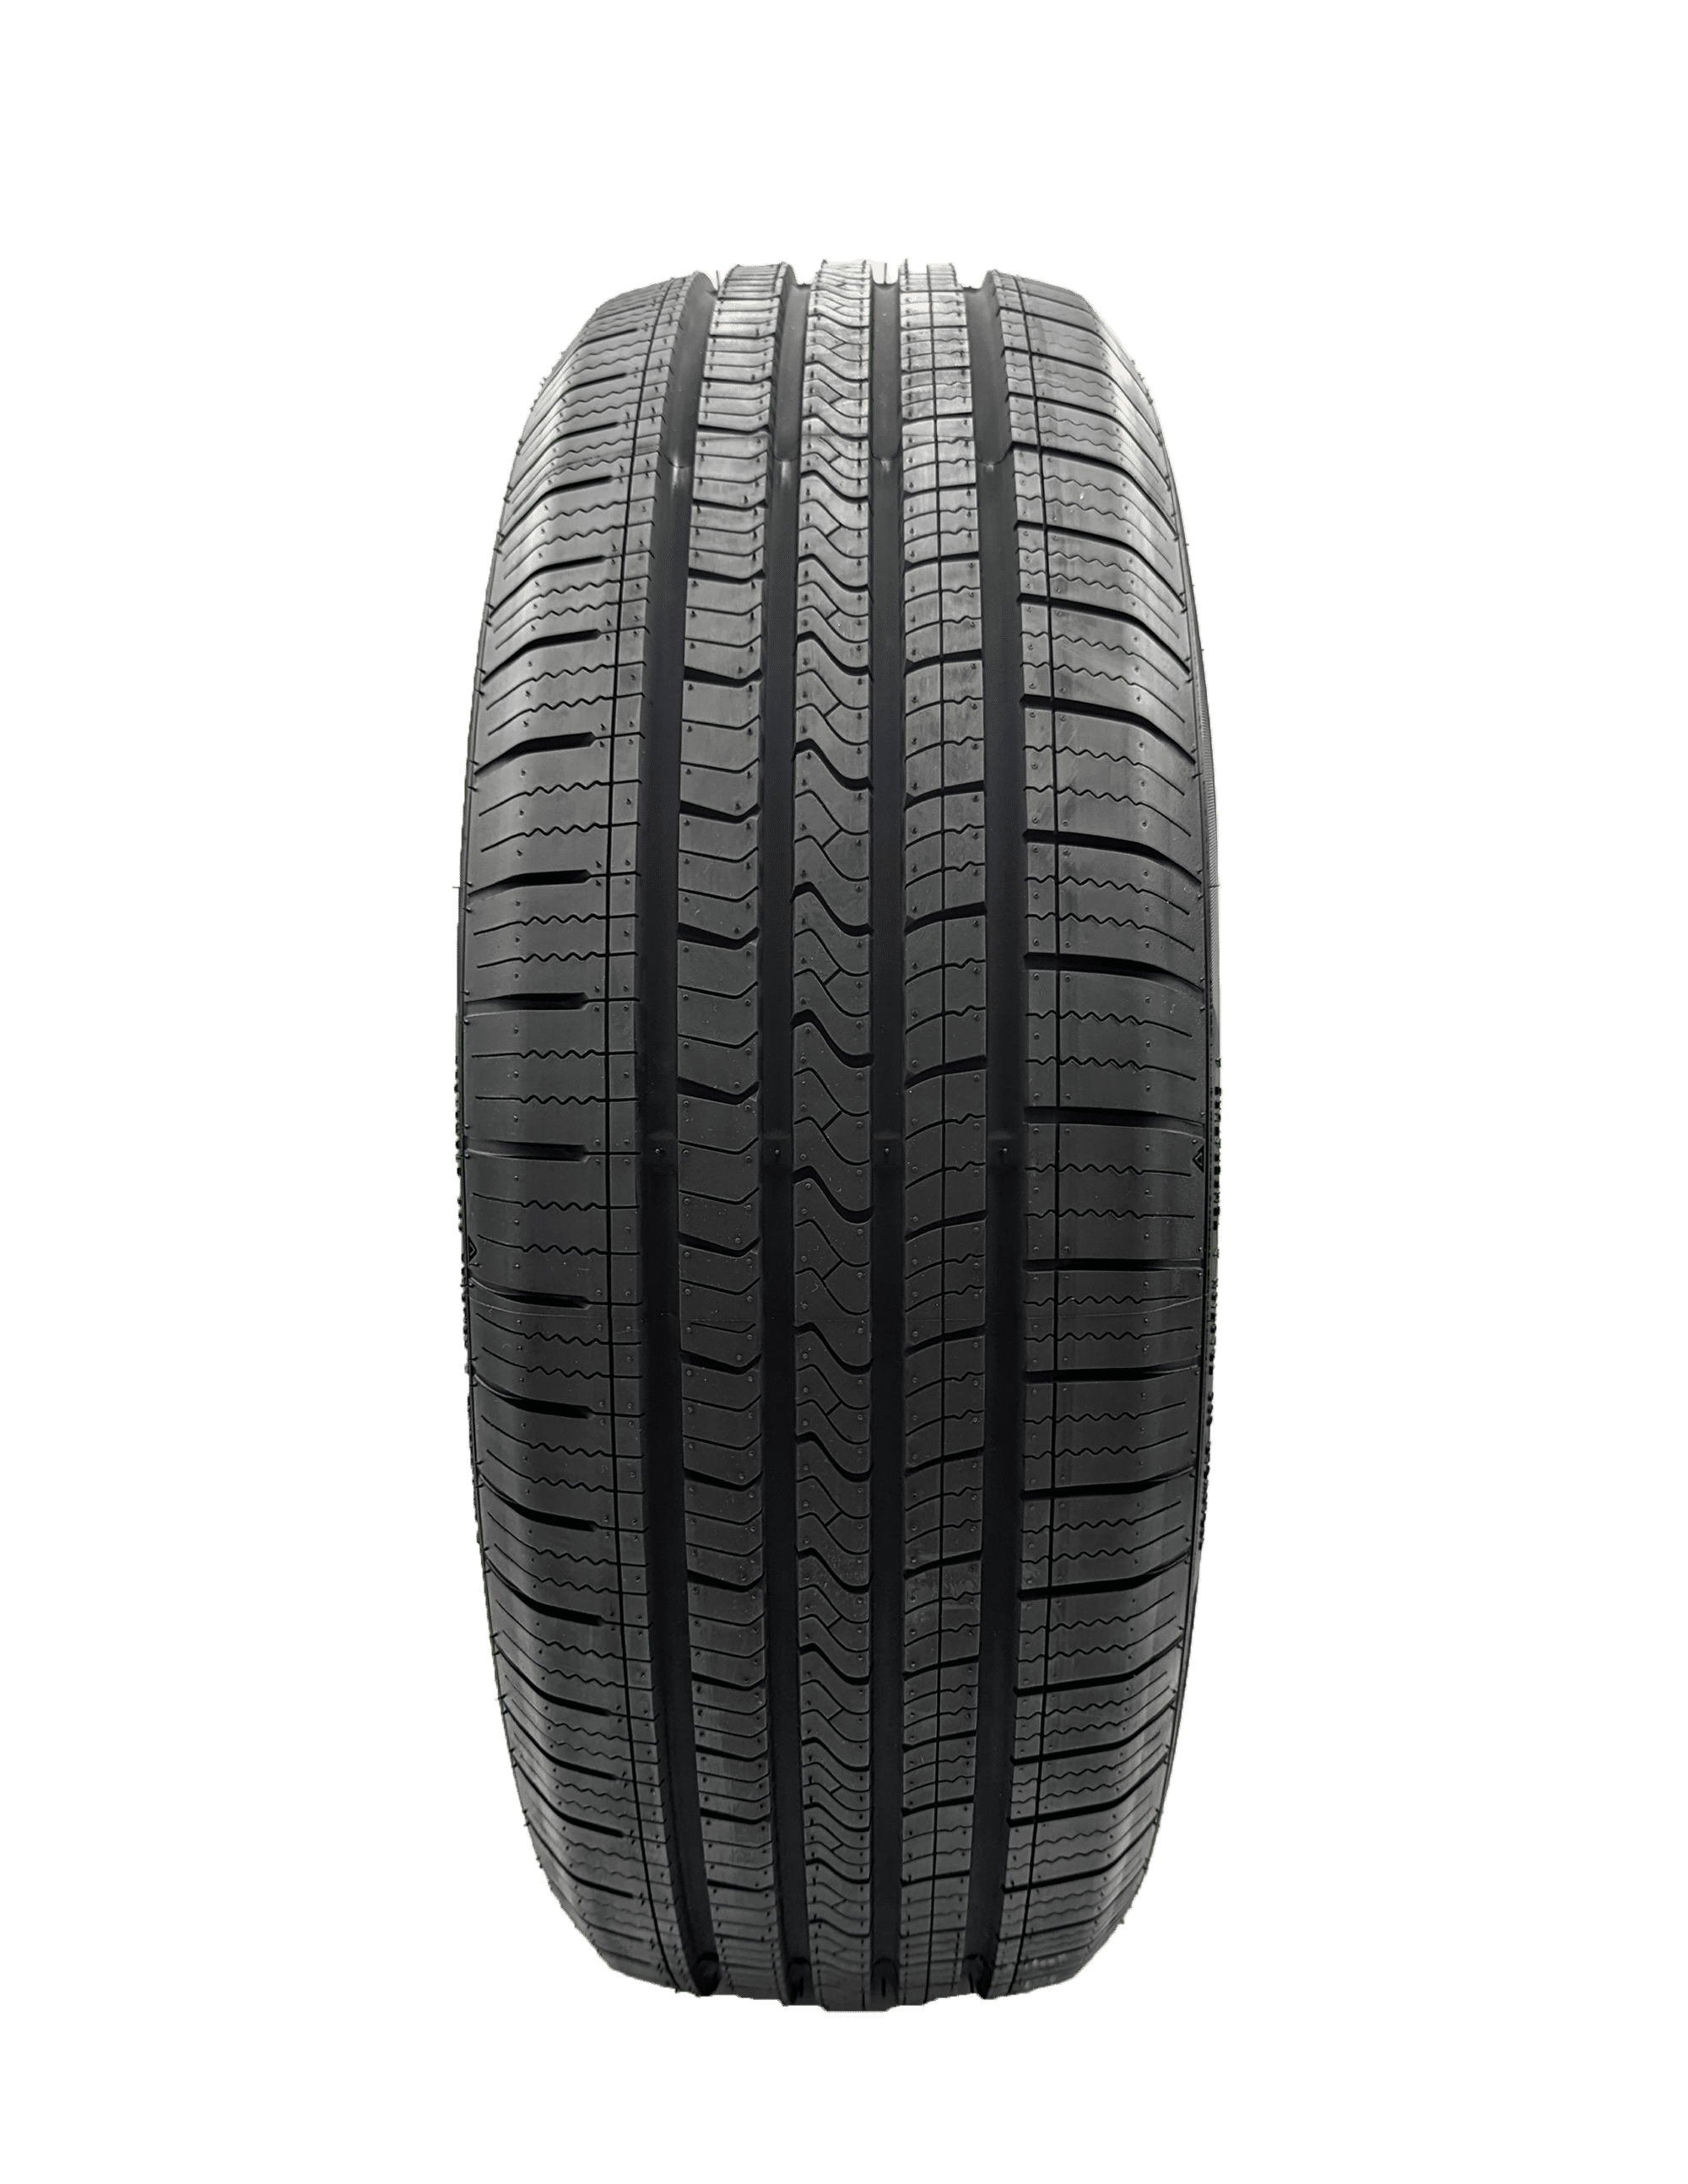 Crossmax P225/50R17 98V XL CT-1 All-Season Tire